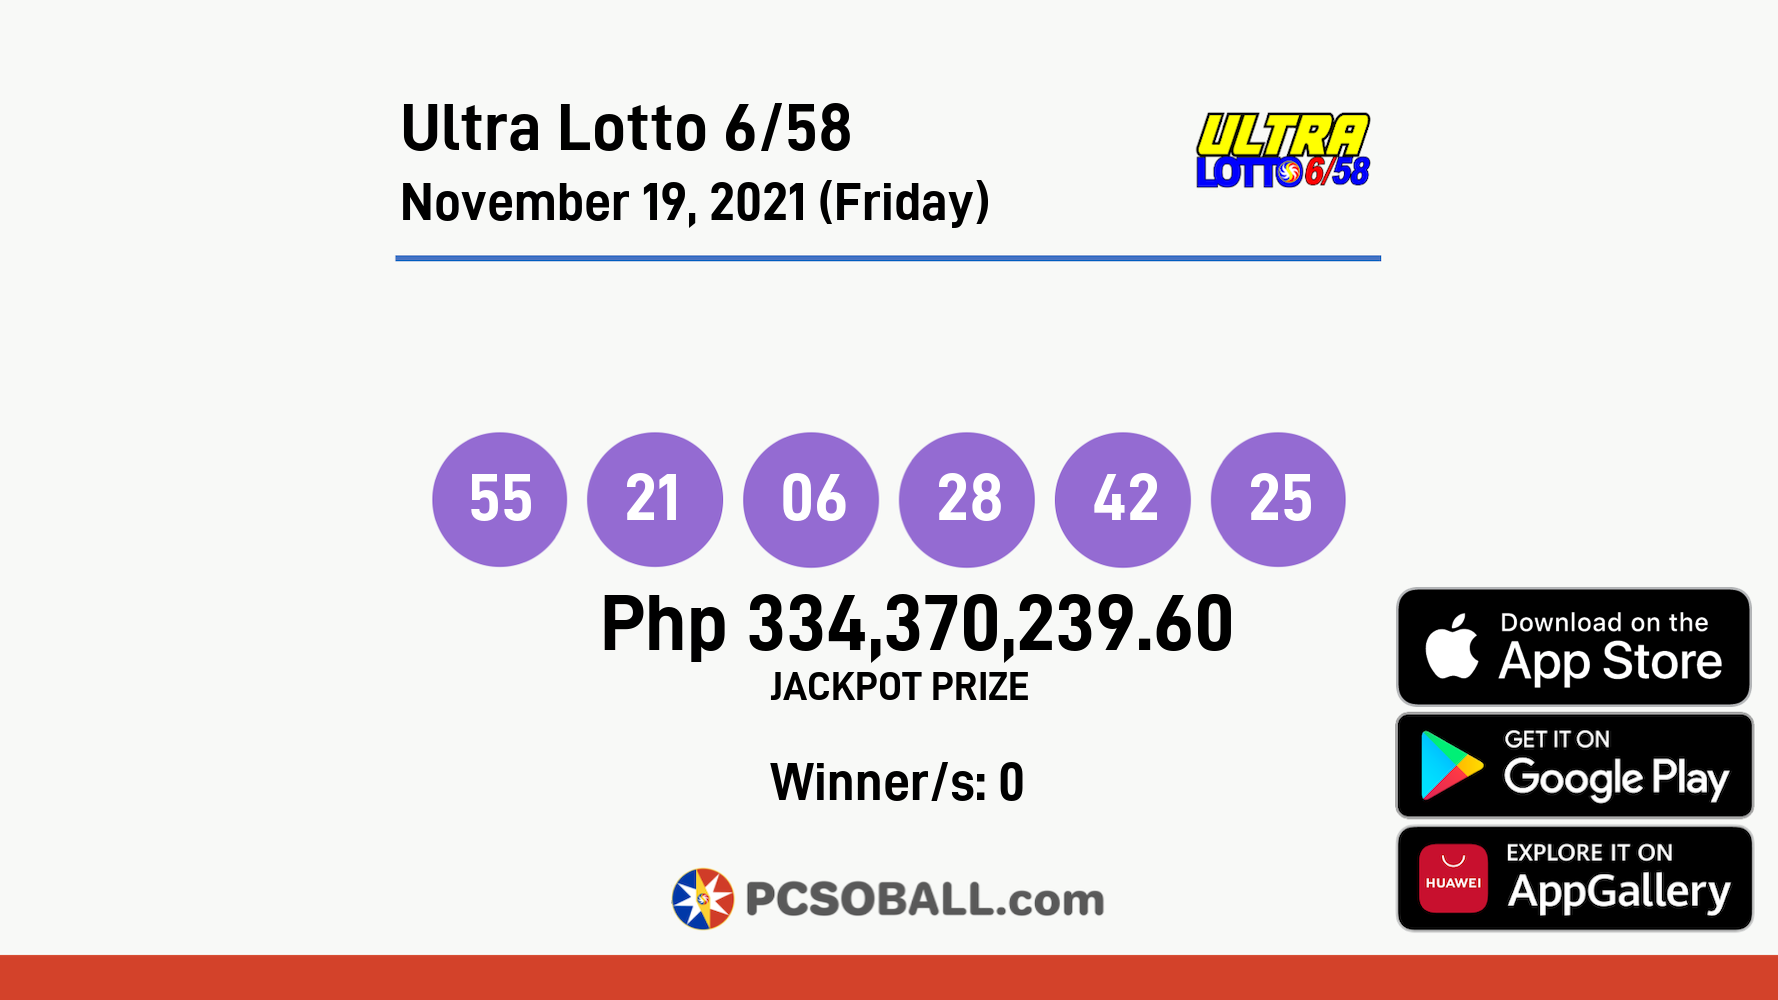 Ultra Lotto 6/58 November 19, 2021 (Friday) Result